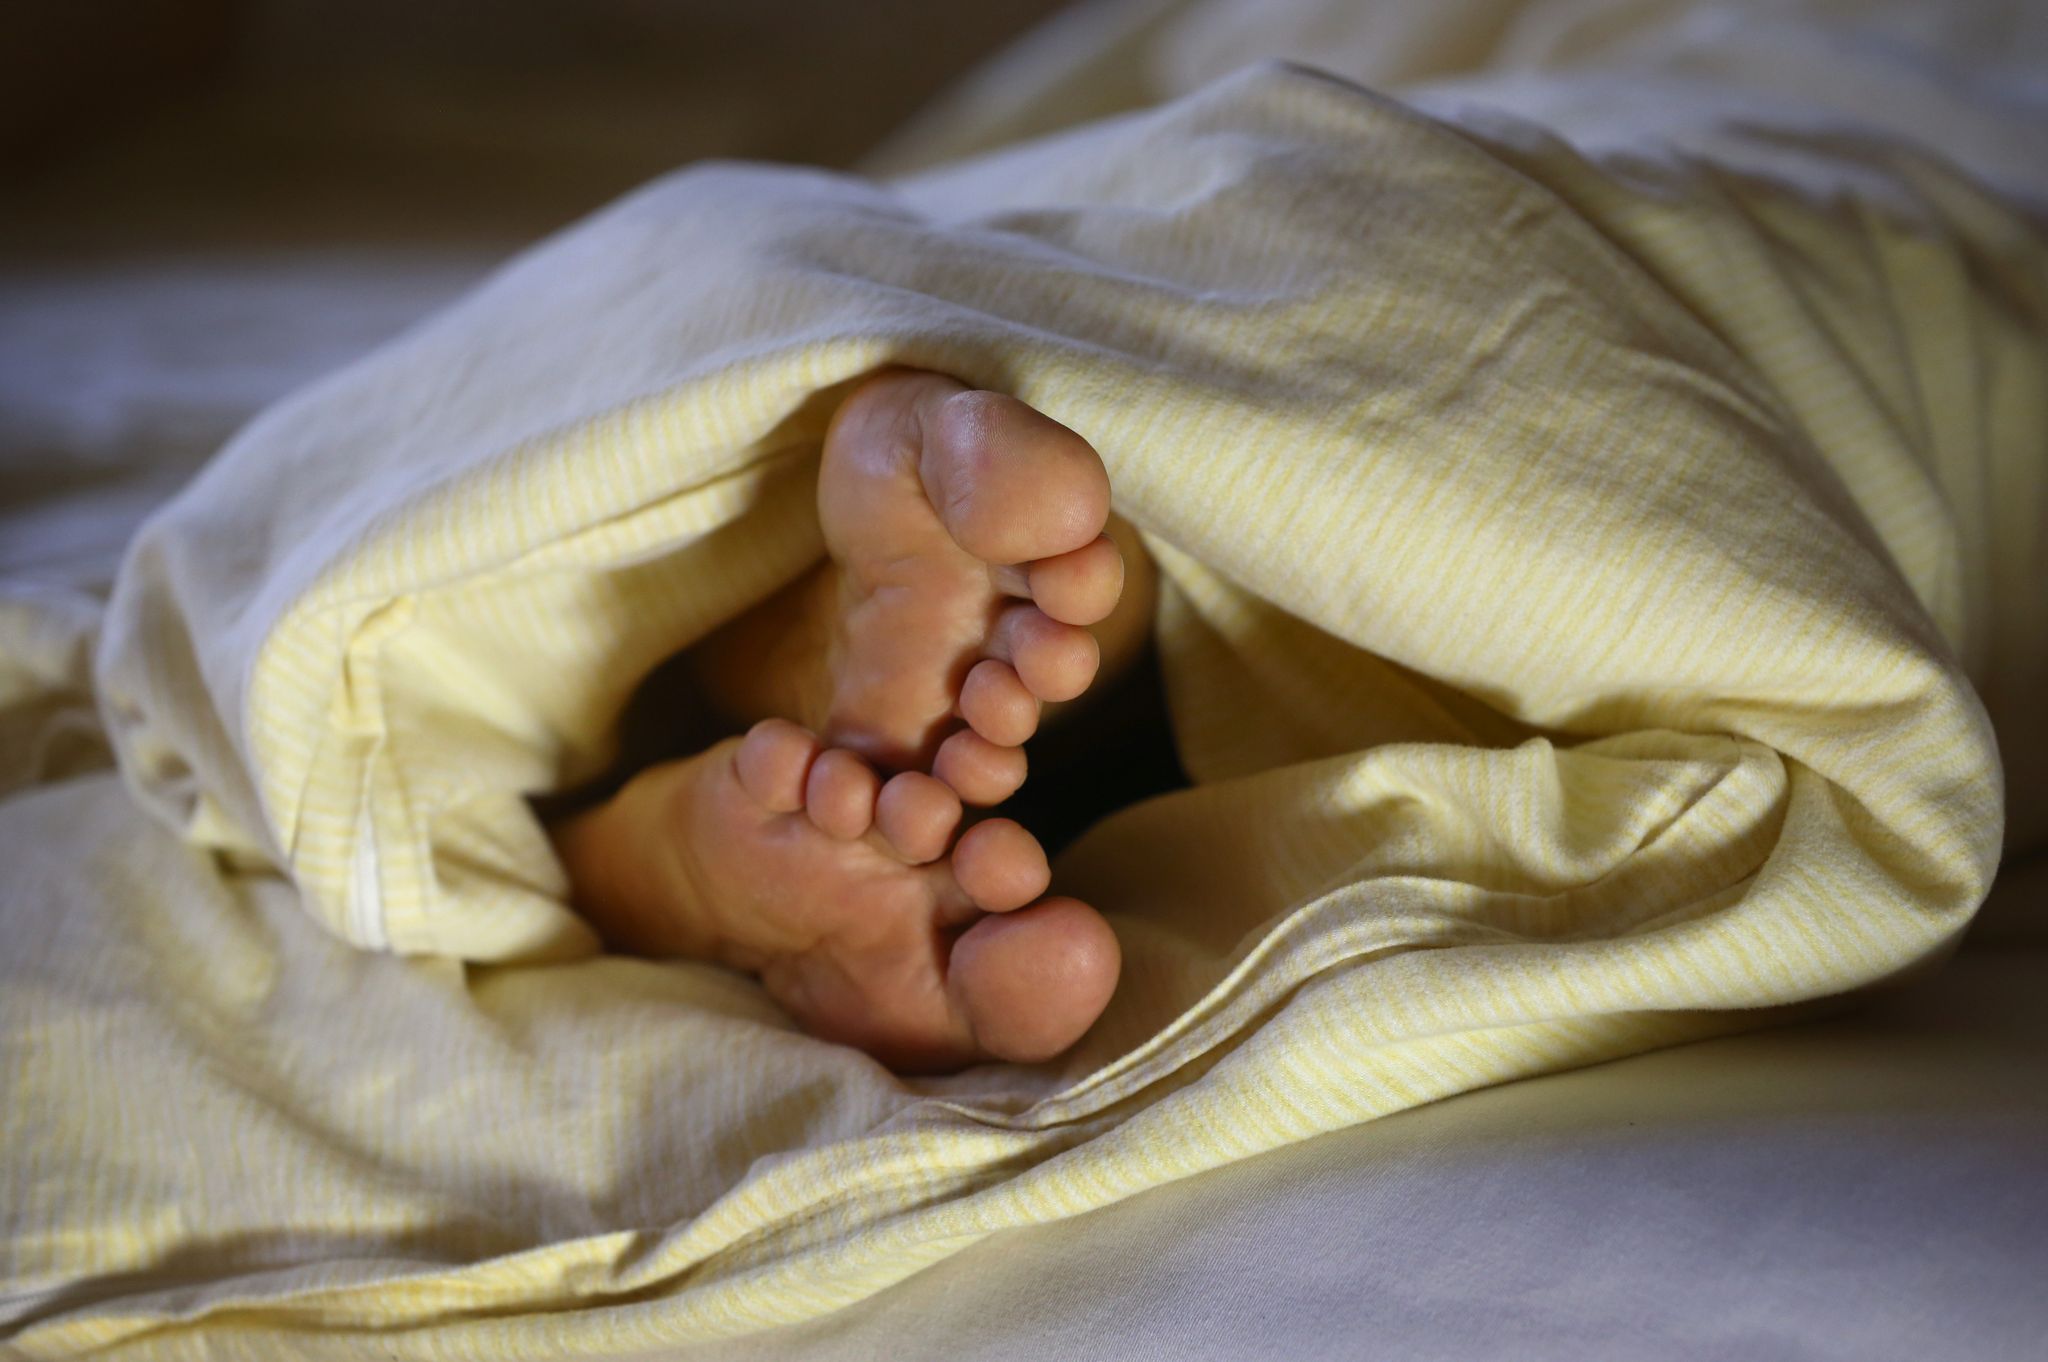 Um den Schlaf ranken sich viele Mythen. Welche davon sind wahr? Ein Faktencheck bringt Klarheit.